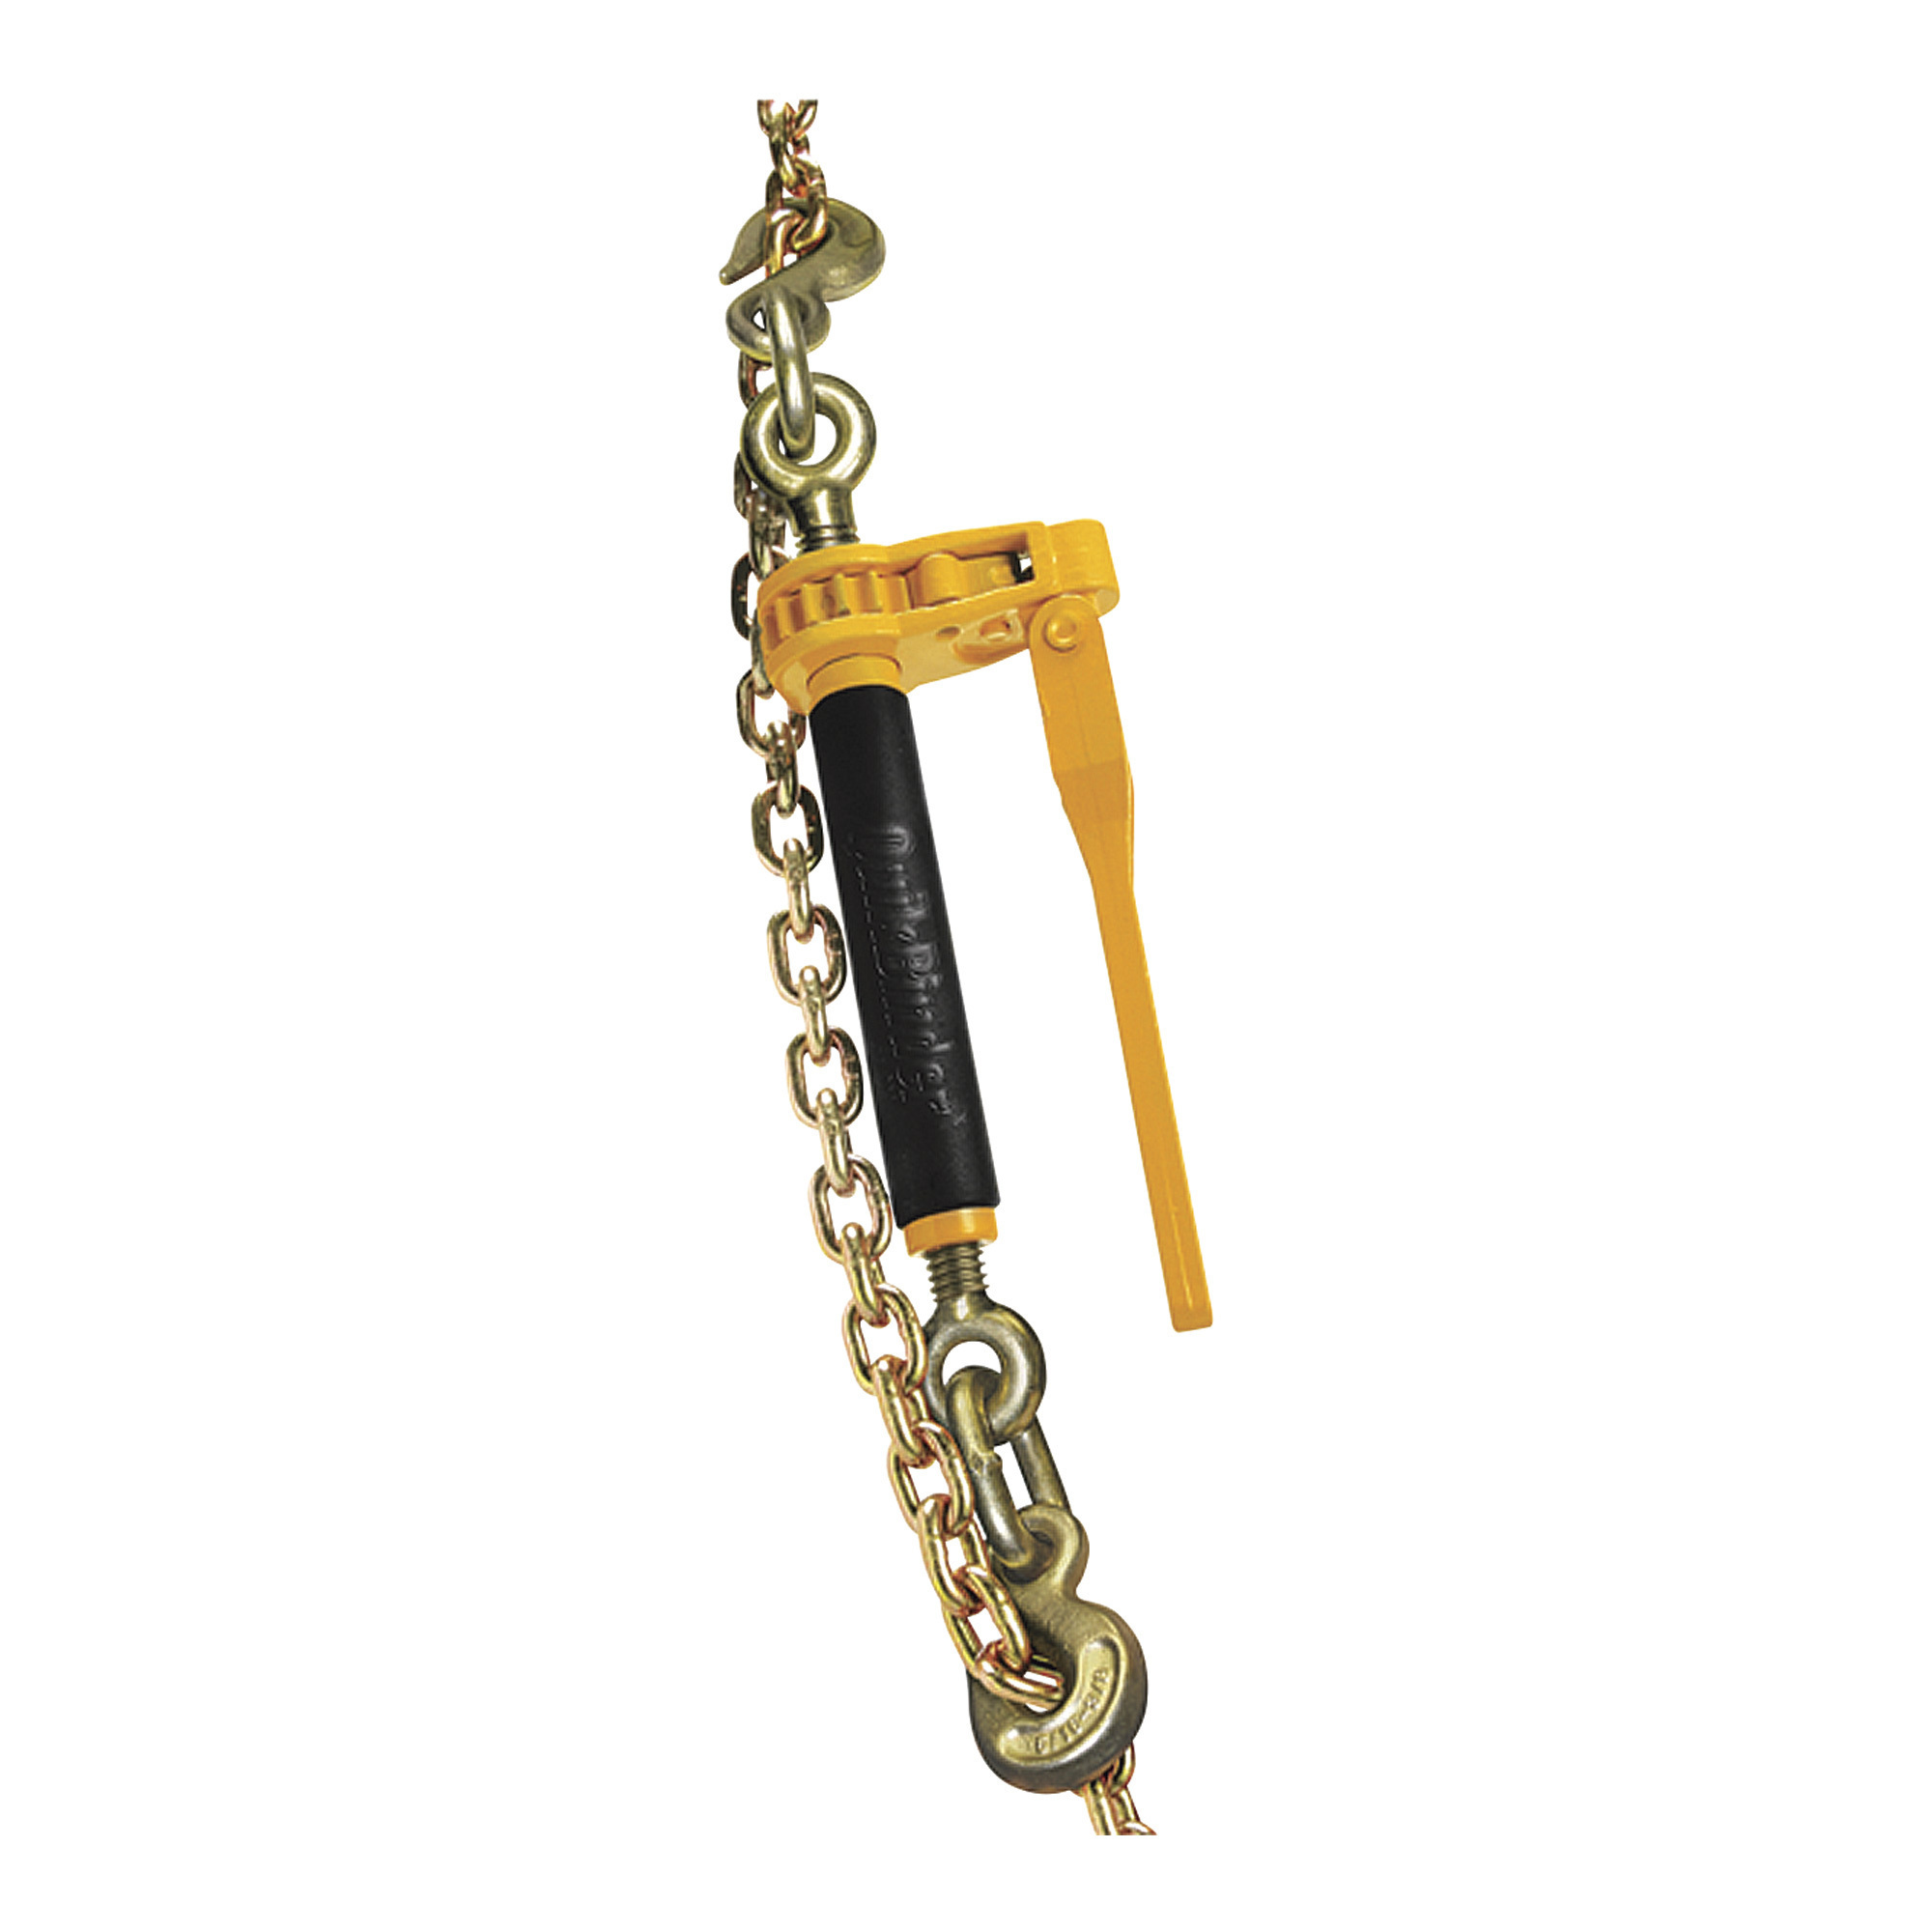 Peerless QuikBinder Plus Ratchet Chain Binders â 7100-Lb. Load Capacity, Model H5125-0658